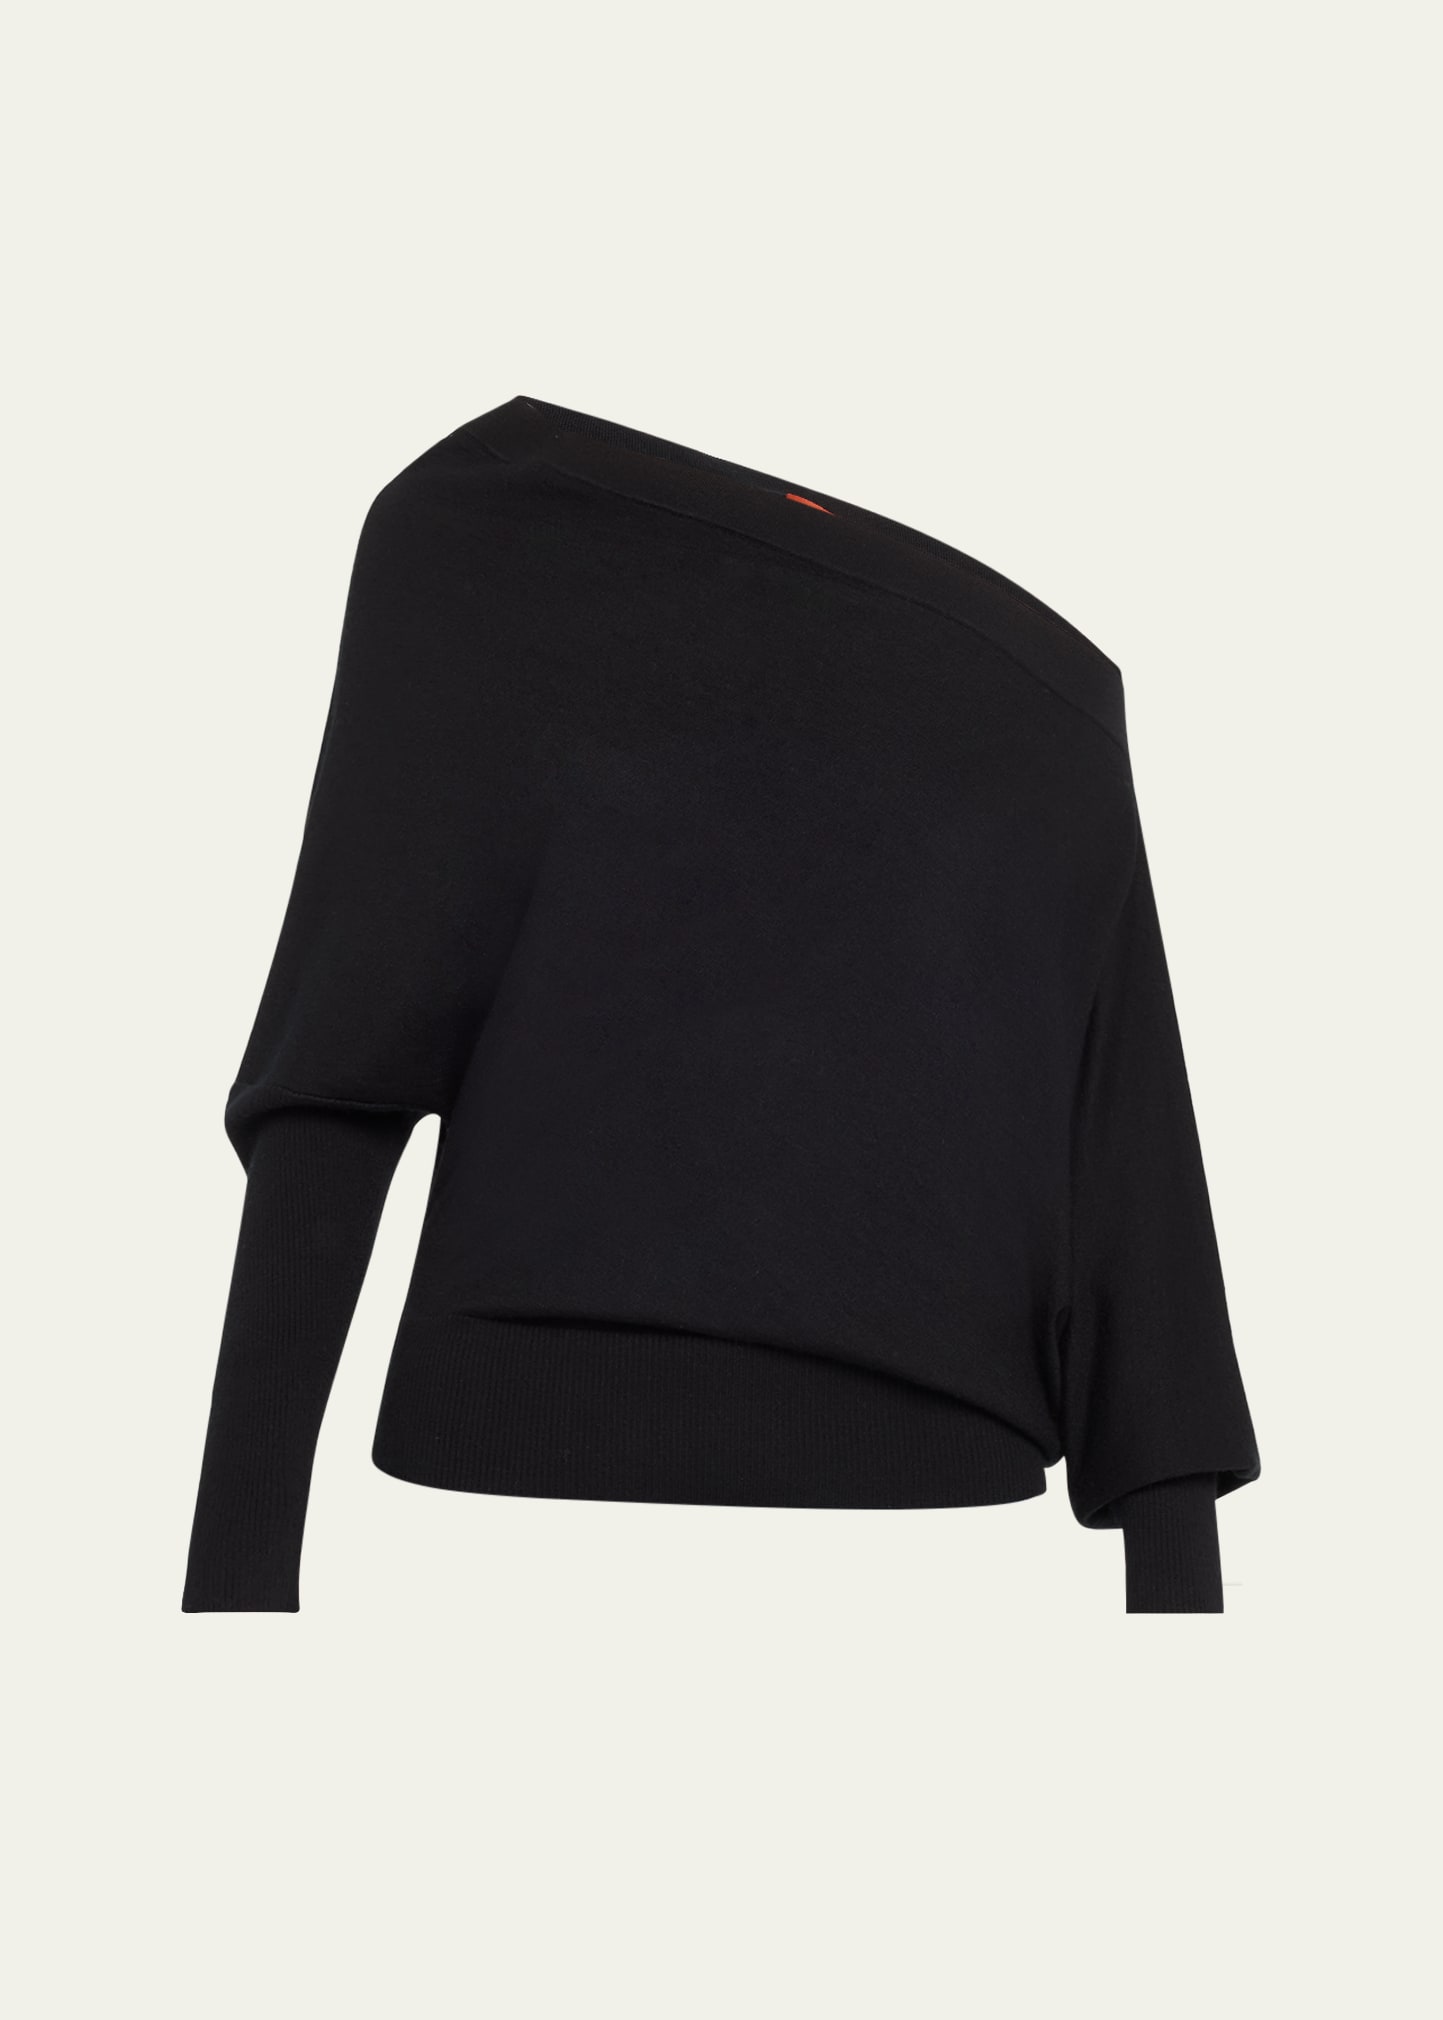 Grainge Cashmere Off-Shoulder Sweater